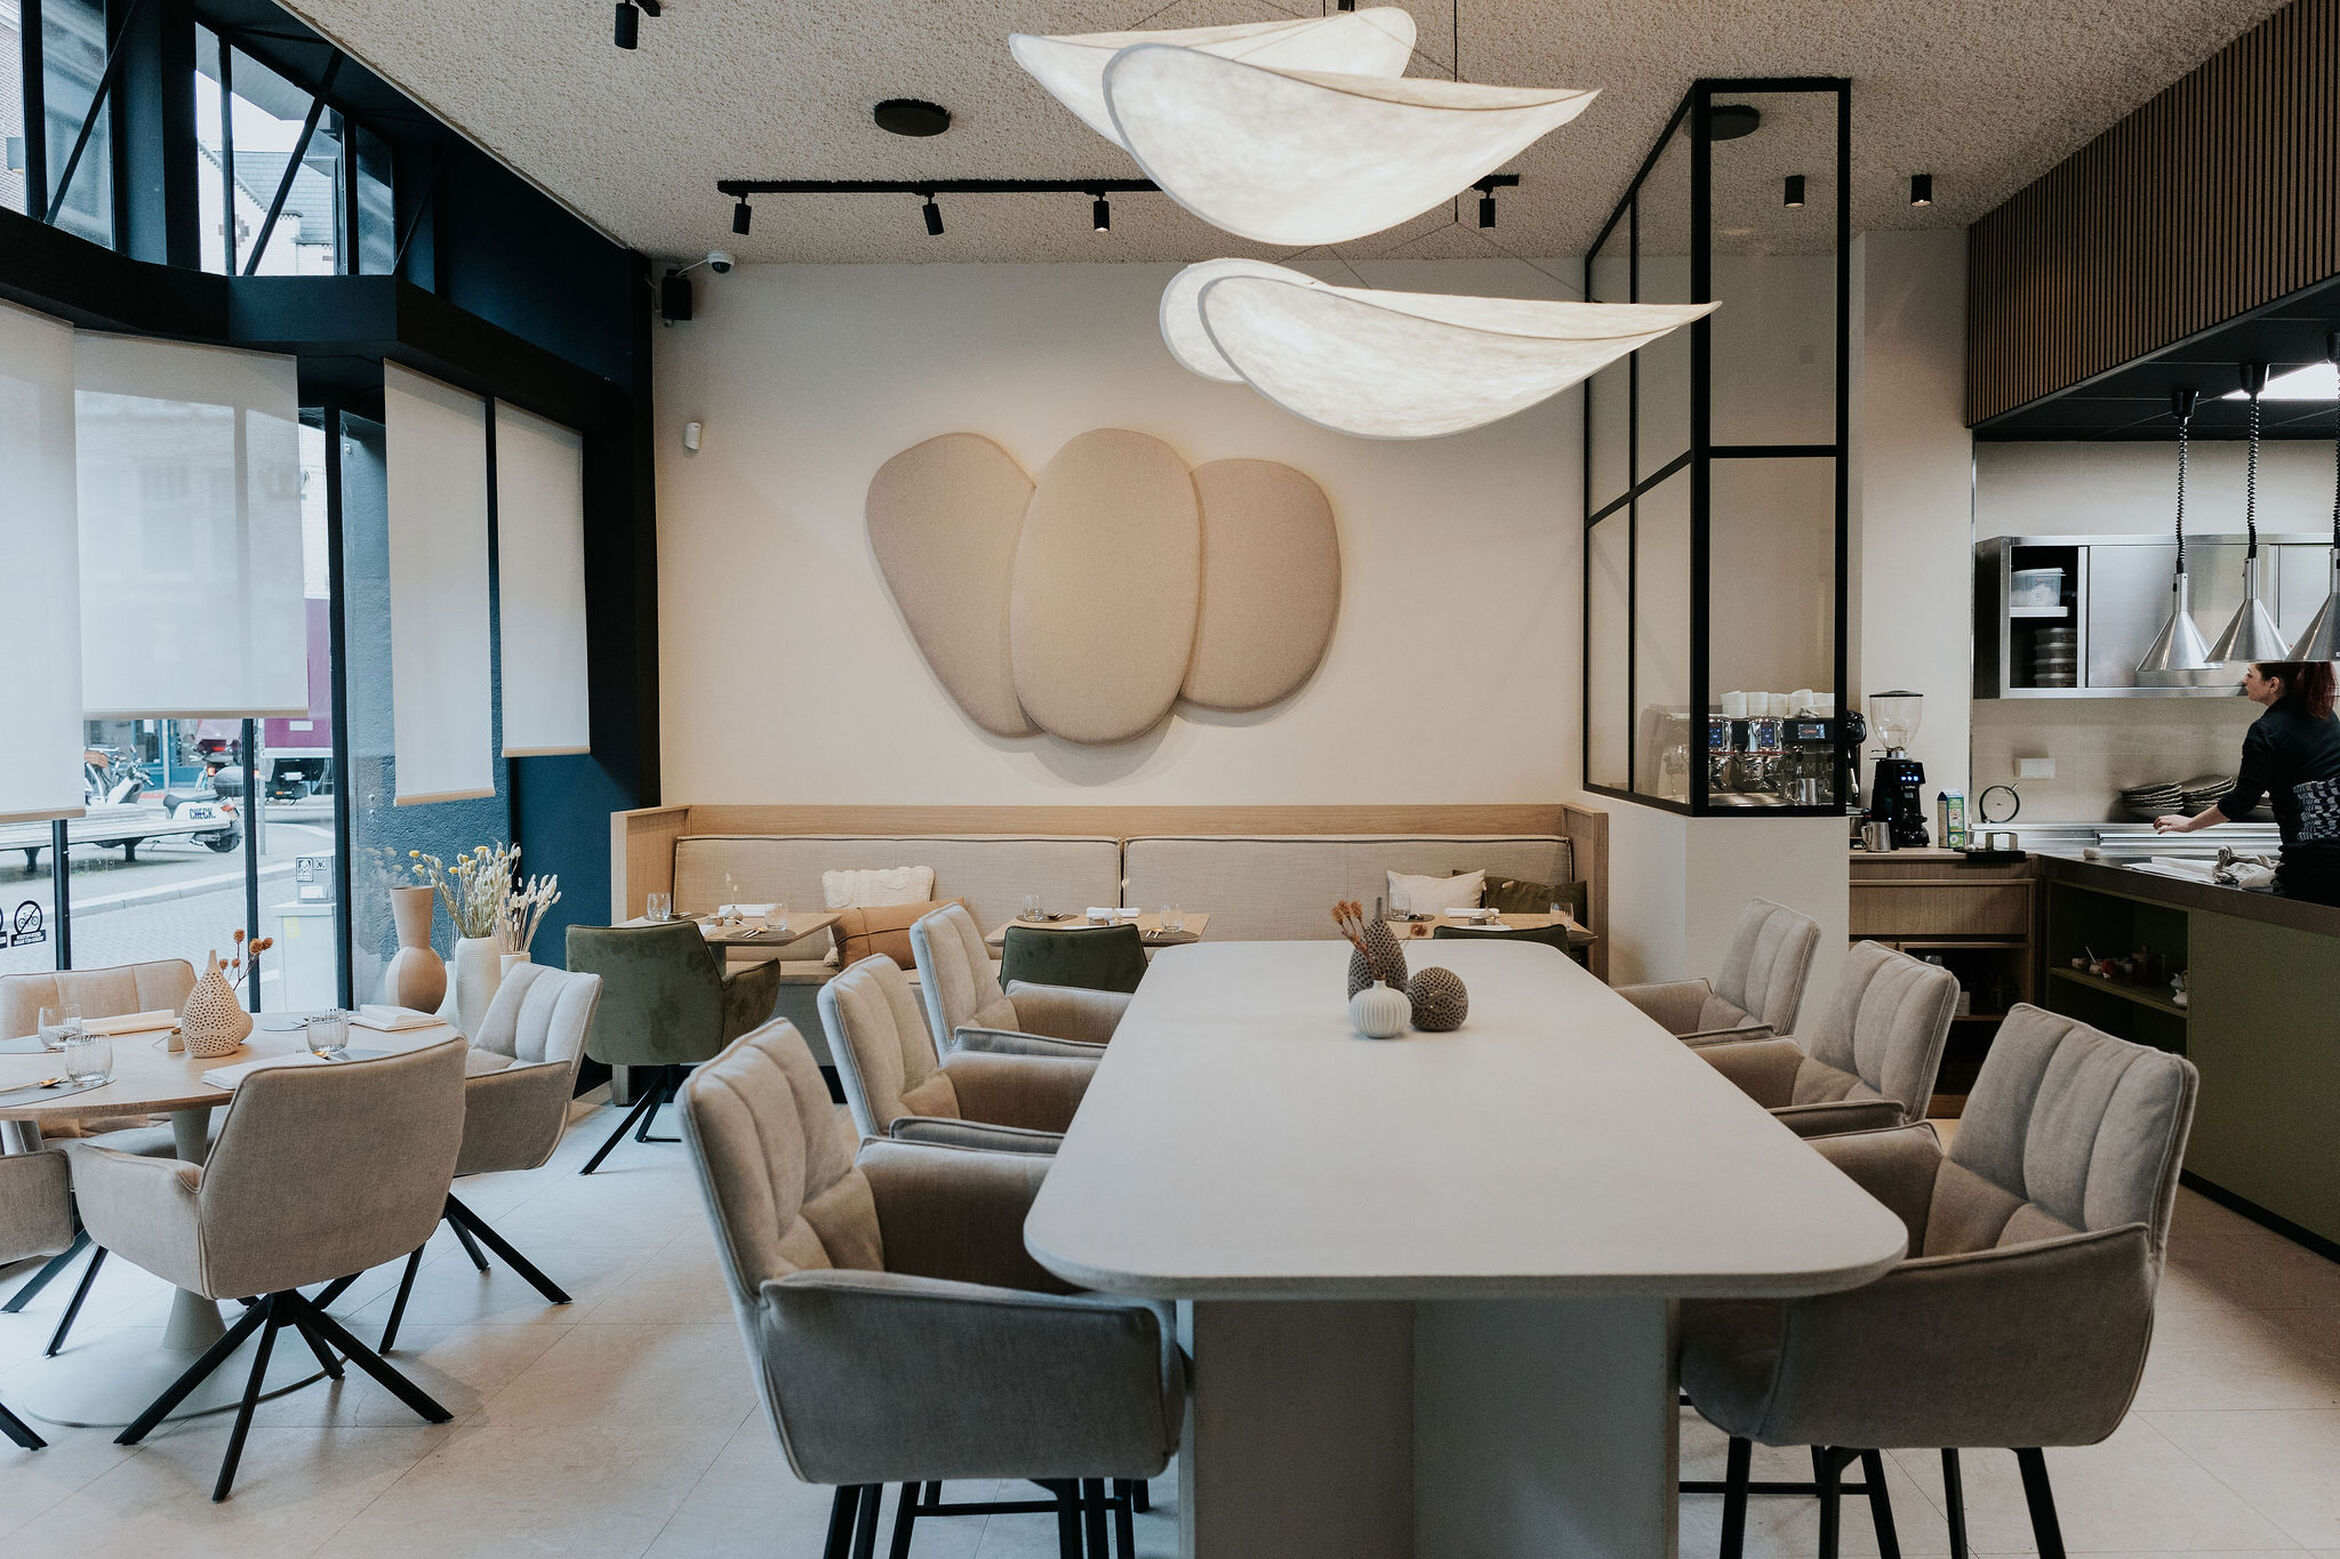 Restaurant Elea, Interior Design, Restaurant Design, Manon de Groot 